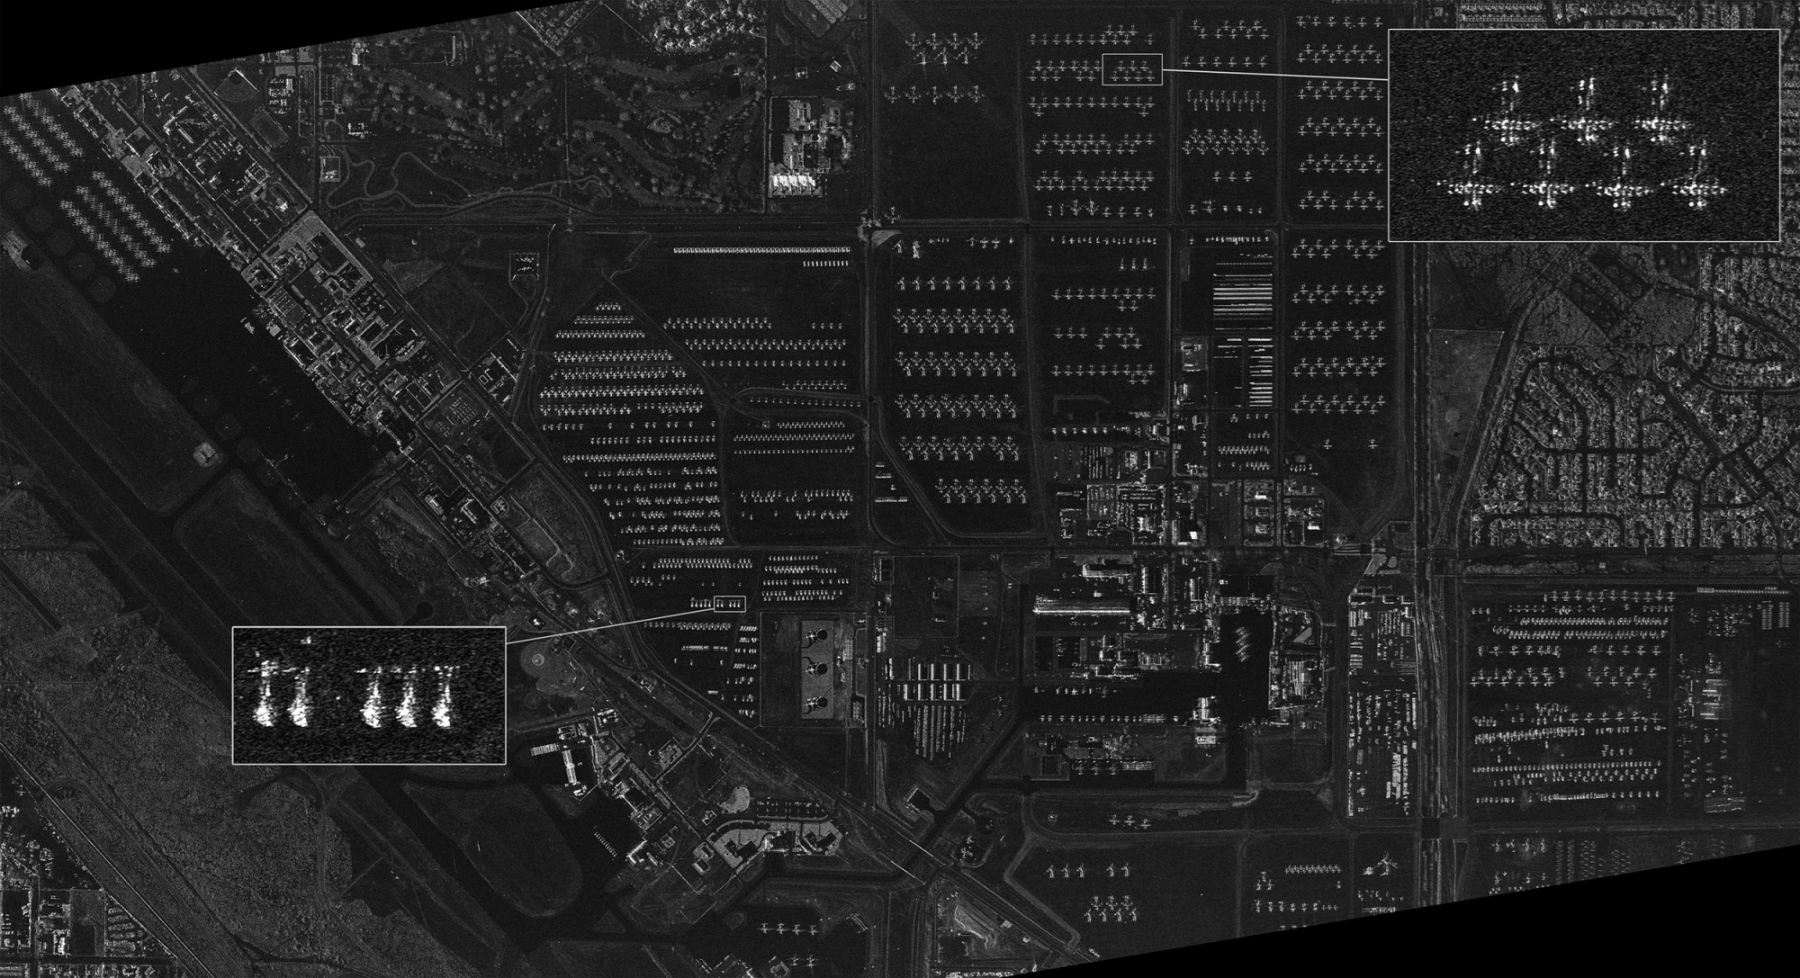 Кладбище военно-воздушной техники AMARG на базе ВВС США  Davis-Monthan в г. Тусон, штат Аризона. На сверхвысокодетальном снимке в режиме Staring SpotLight видны вертолеты и самолеты. ©DLR e.V. (2015), Distribution Airbus DS/Infoterra GmbH.